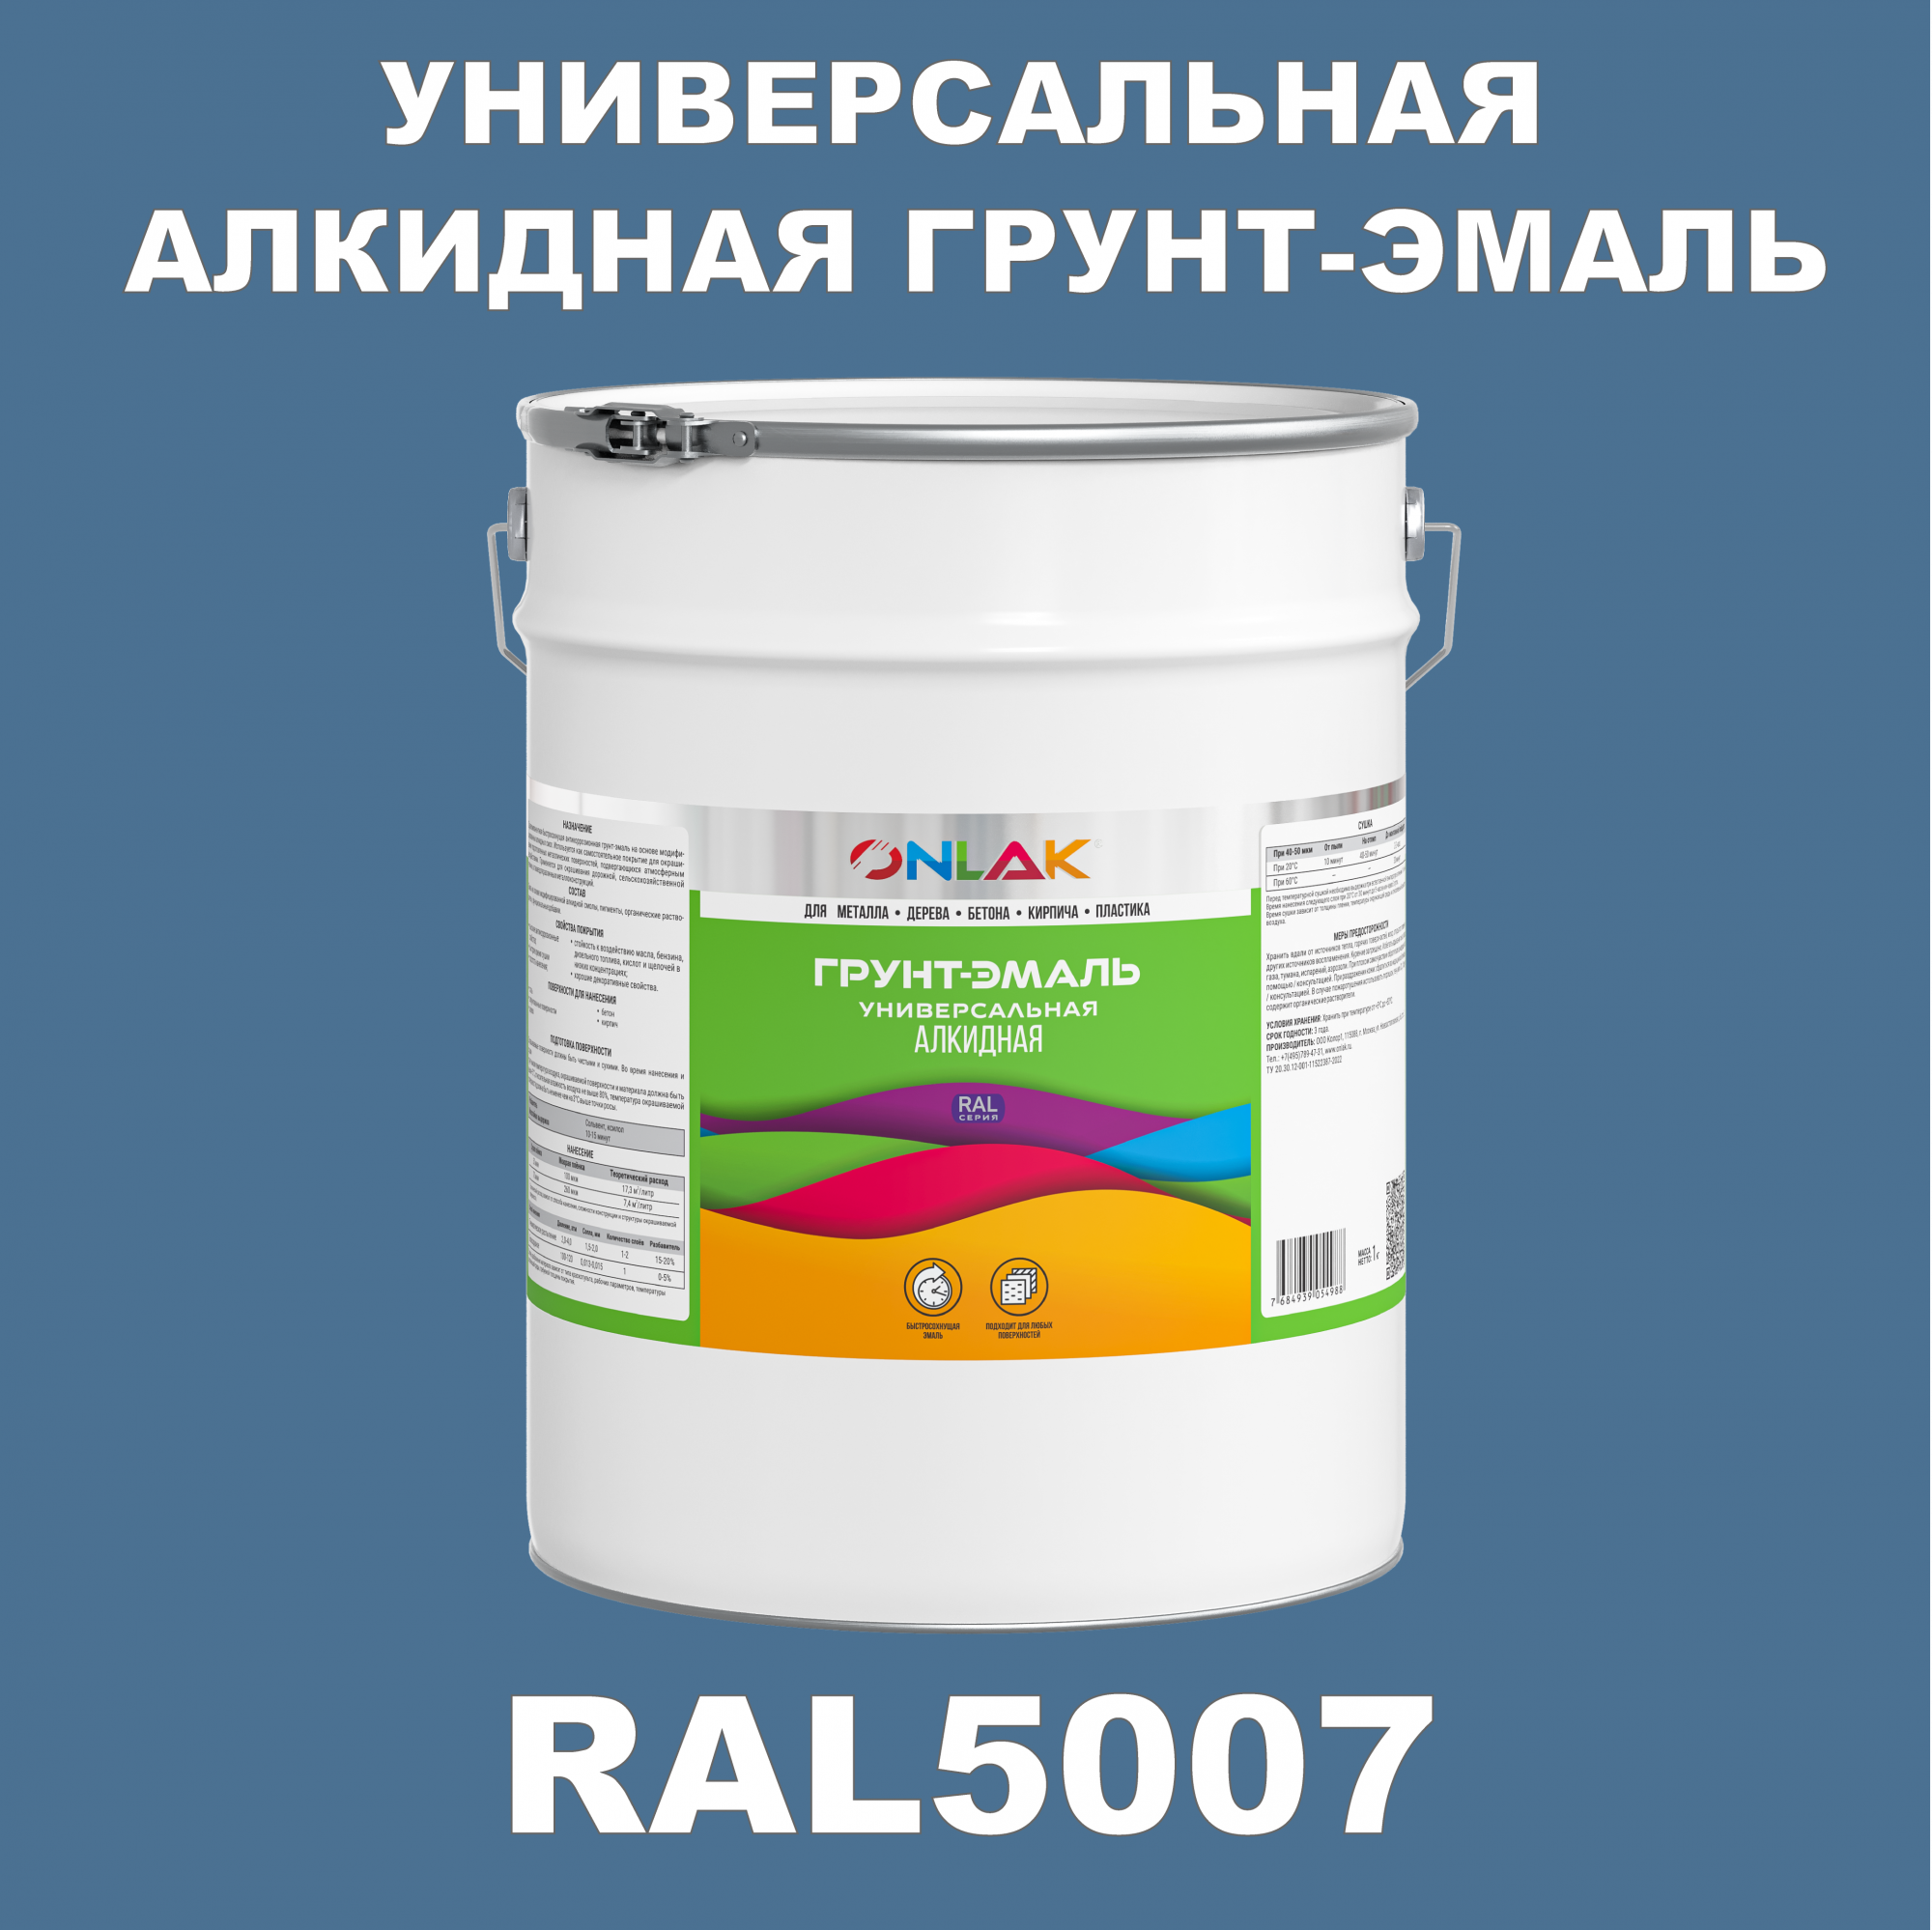 Грунт-эмаль ONLAK 1К RAL5007 антикоррозионная алкидная по металлу по ржавчине 20 кг грунт эмаль yollo по ржавчине алкидная синяя 0 9 кг